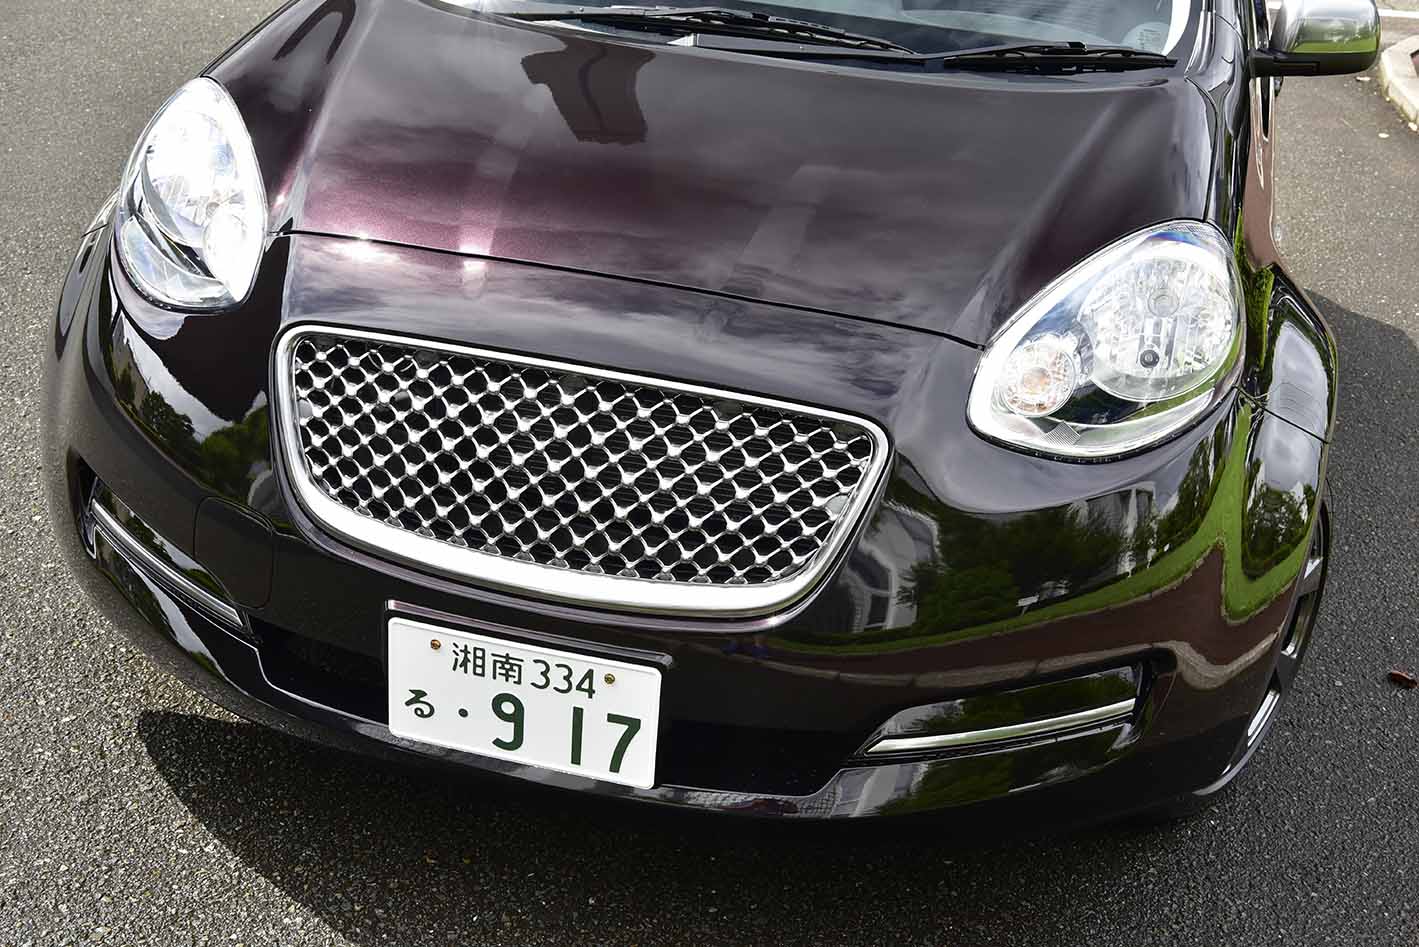 かつて高性能の象徴だった フェンダー が特徴的な日本車 10選 自動車情報誌 ベストカー